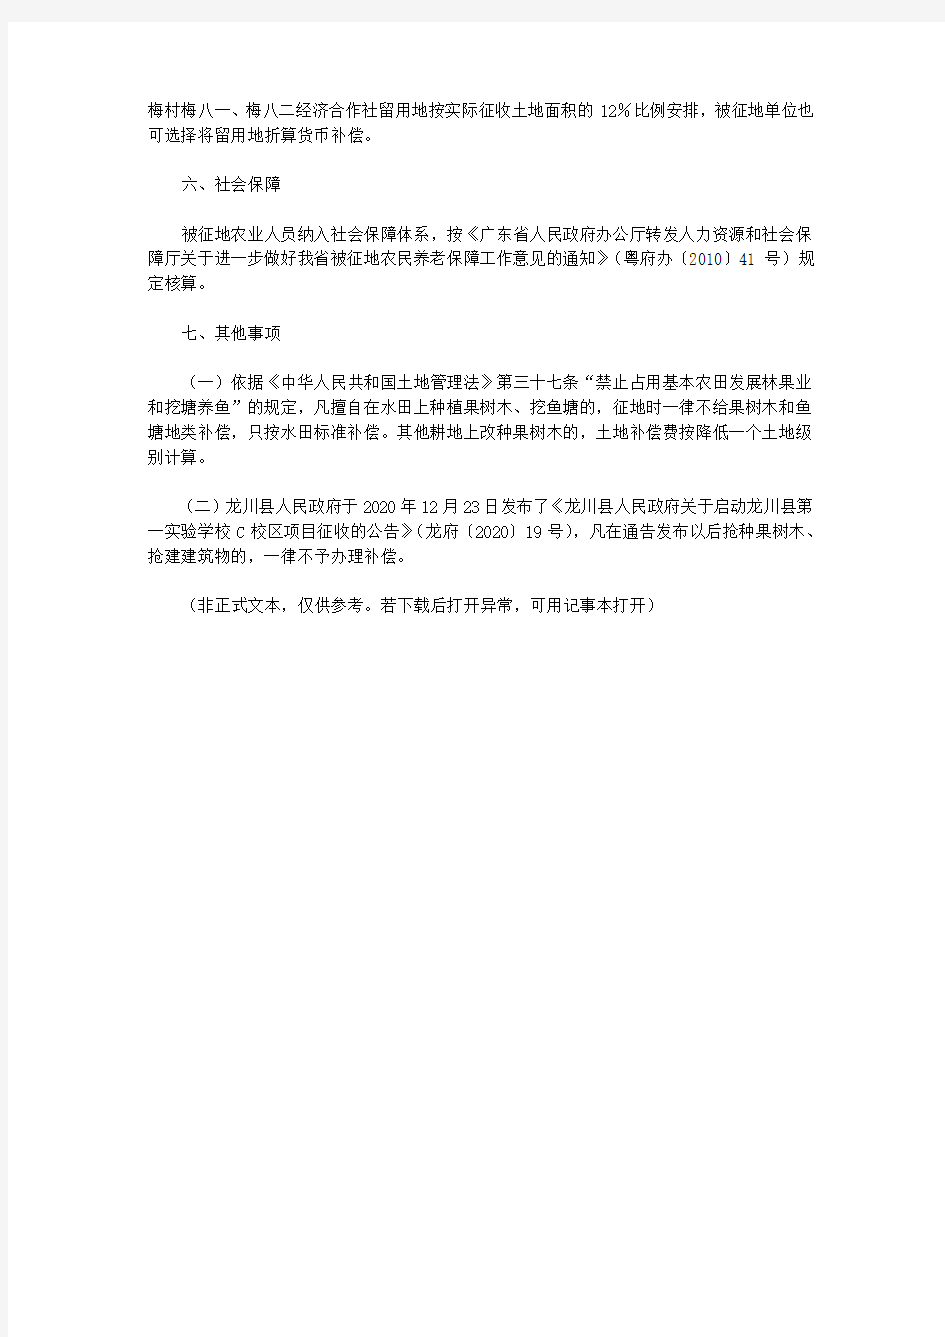 关于印发龙川县第一实验学校C校区项目征地补偿标准的通知(2020)